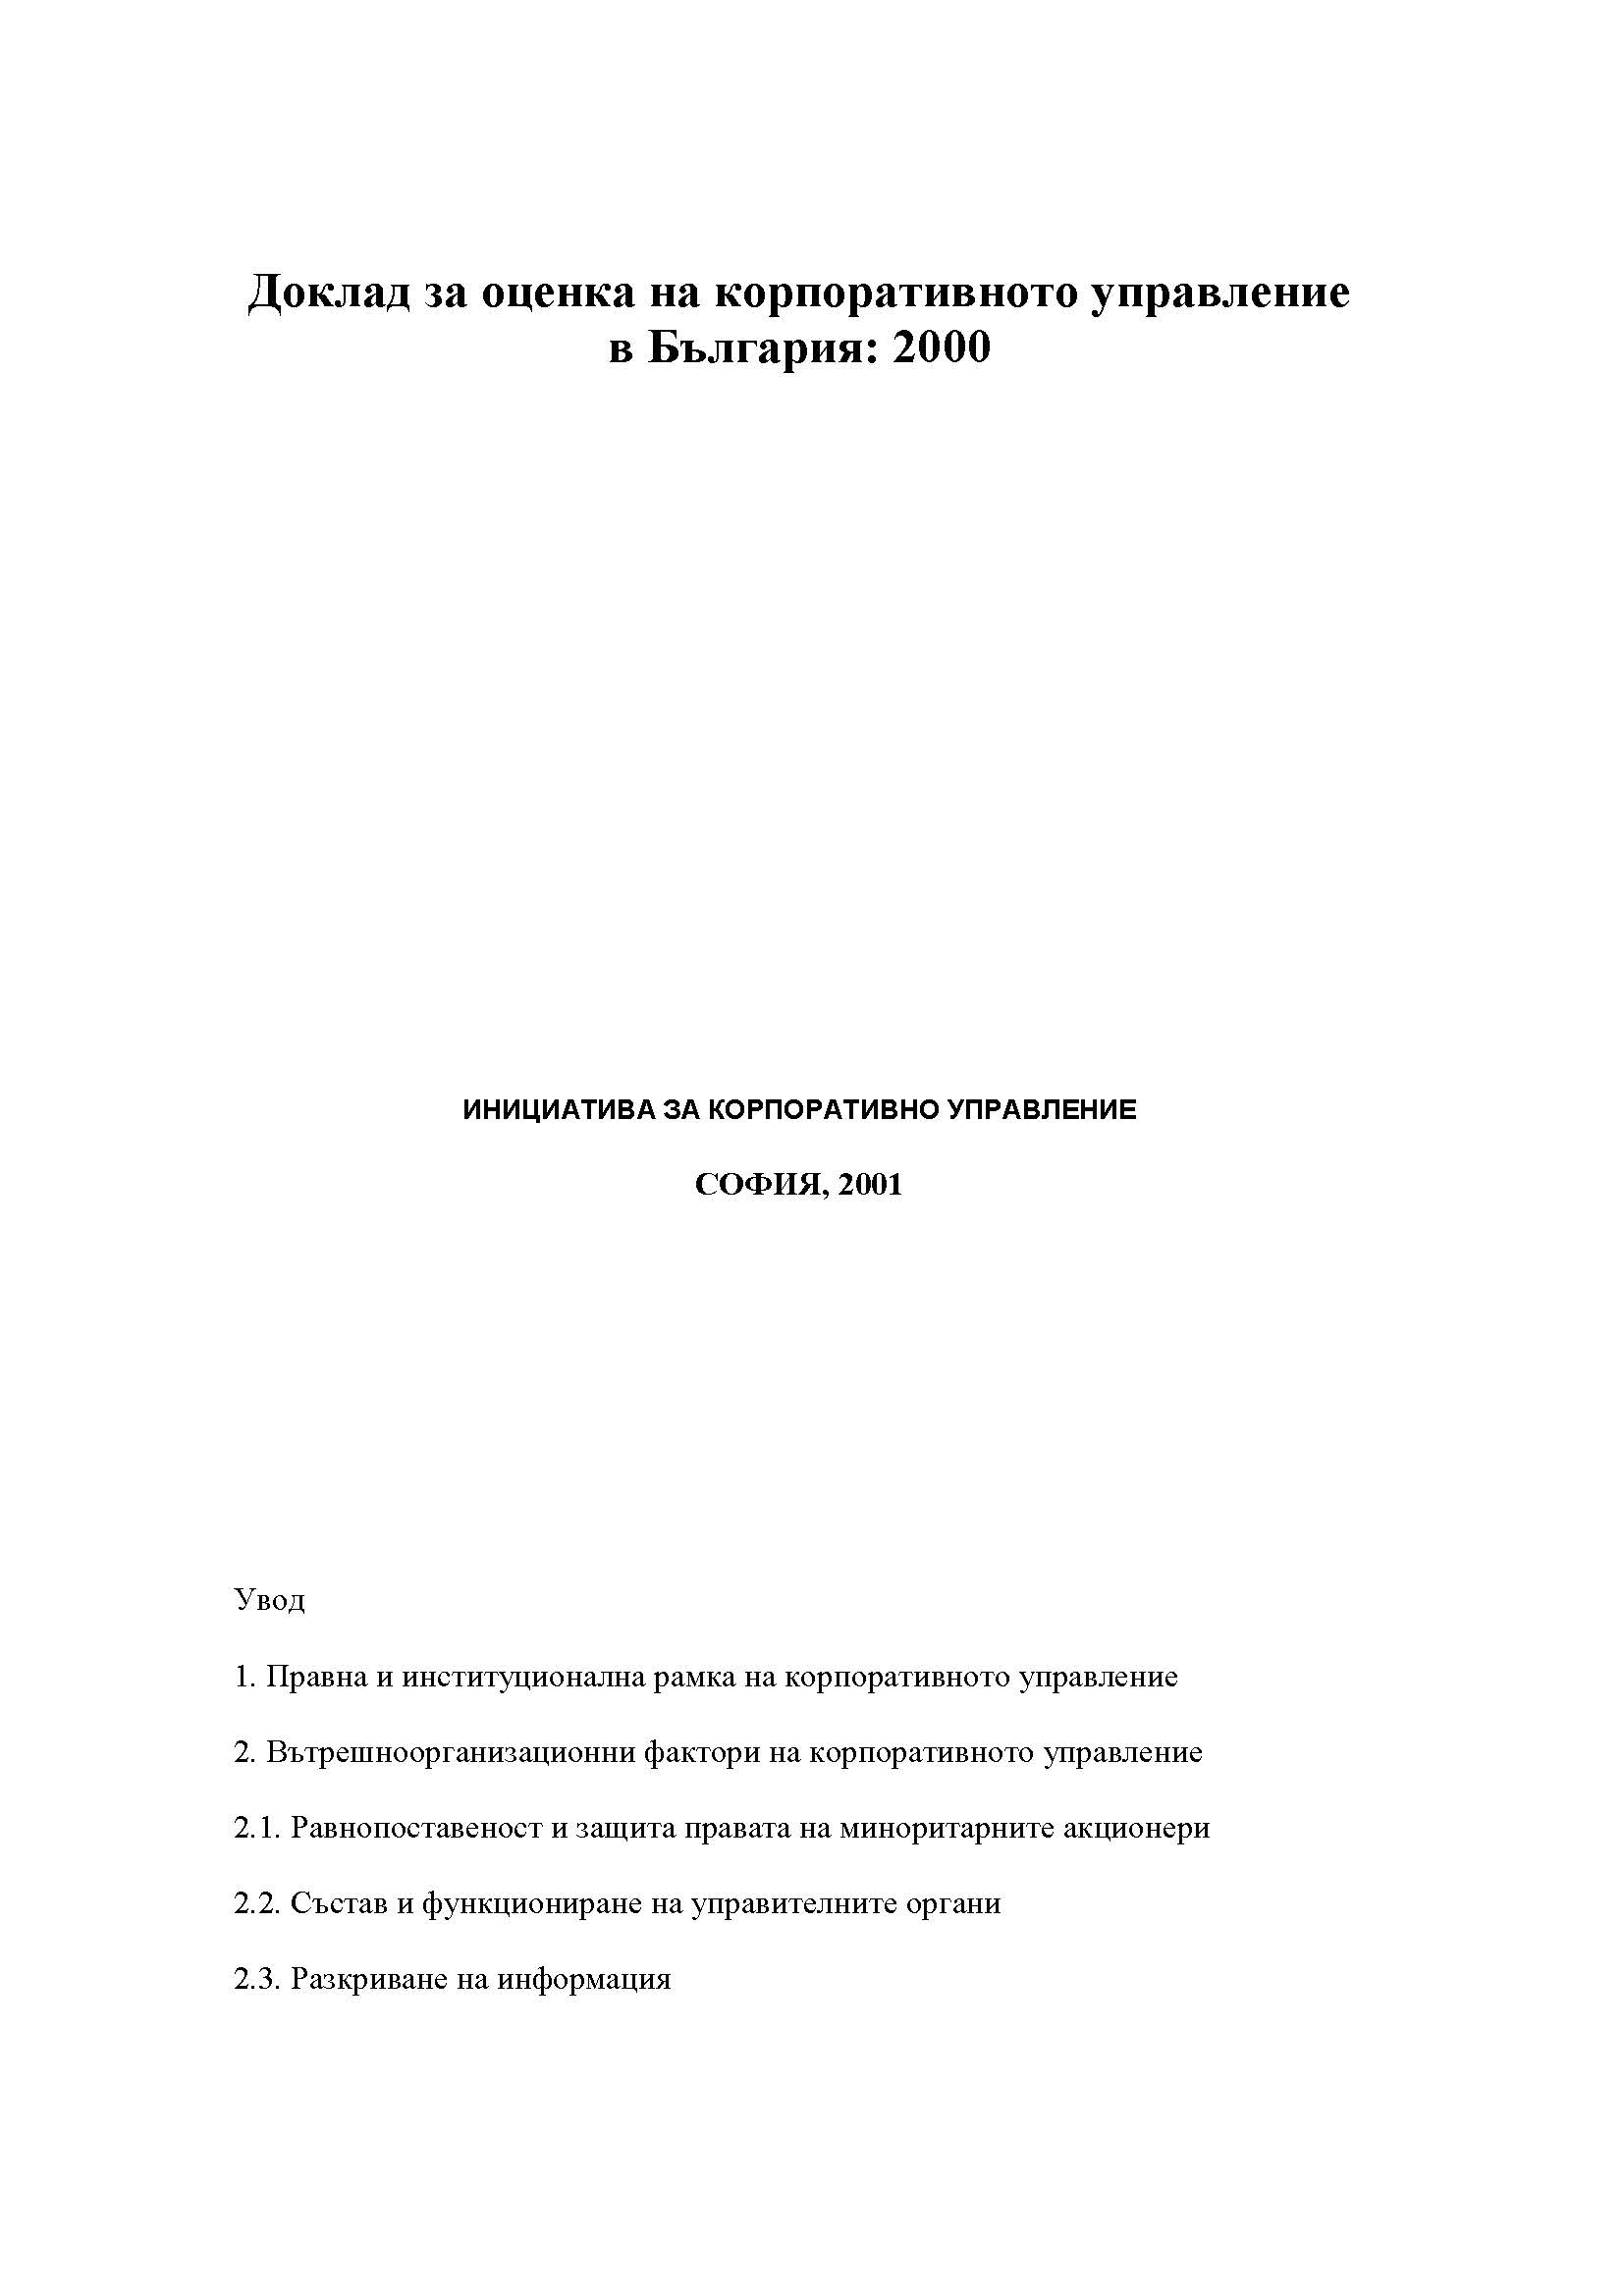 Доклад за оценка на корпоративното управление в България: 2000